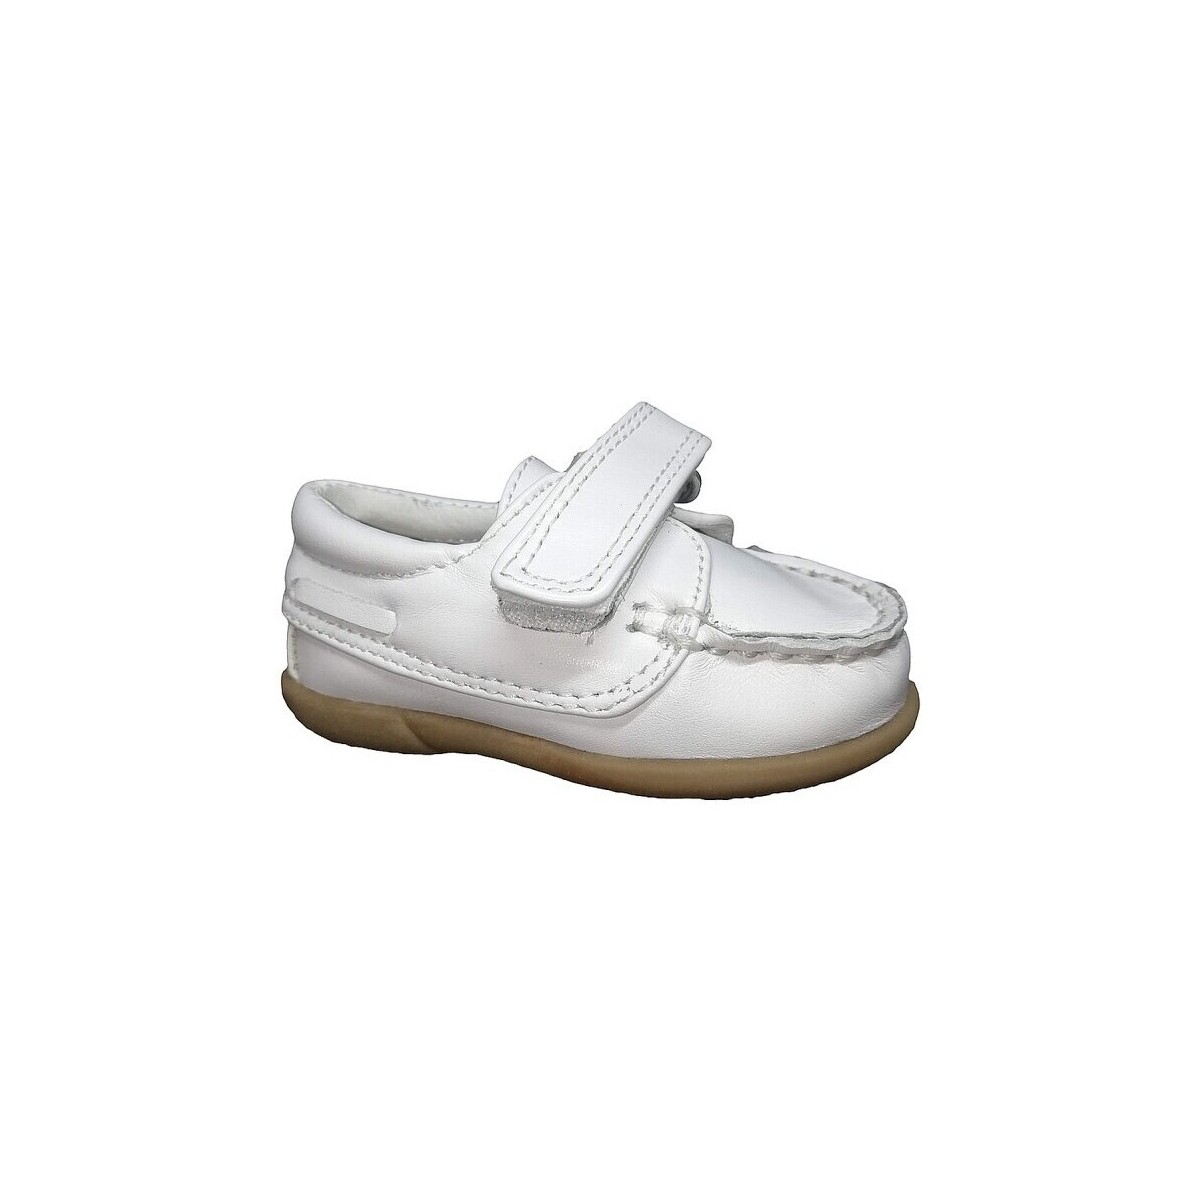 Boat shoes D'bébé 24518-18